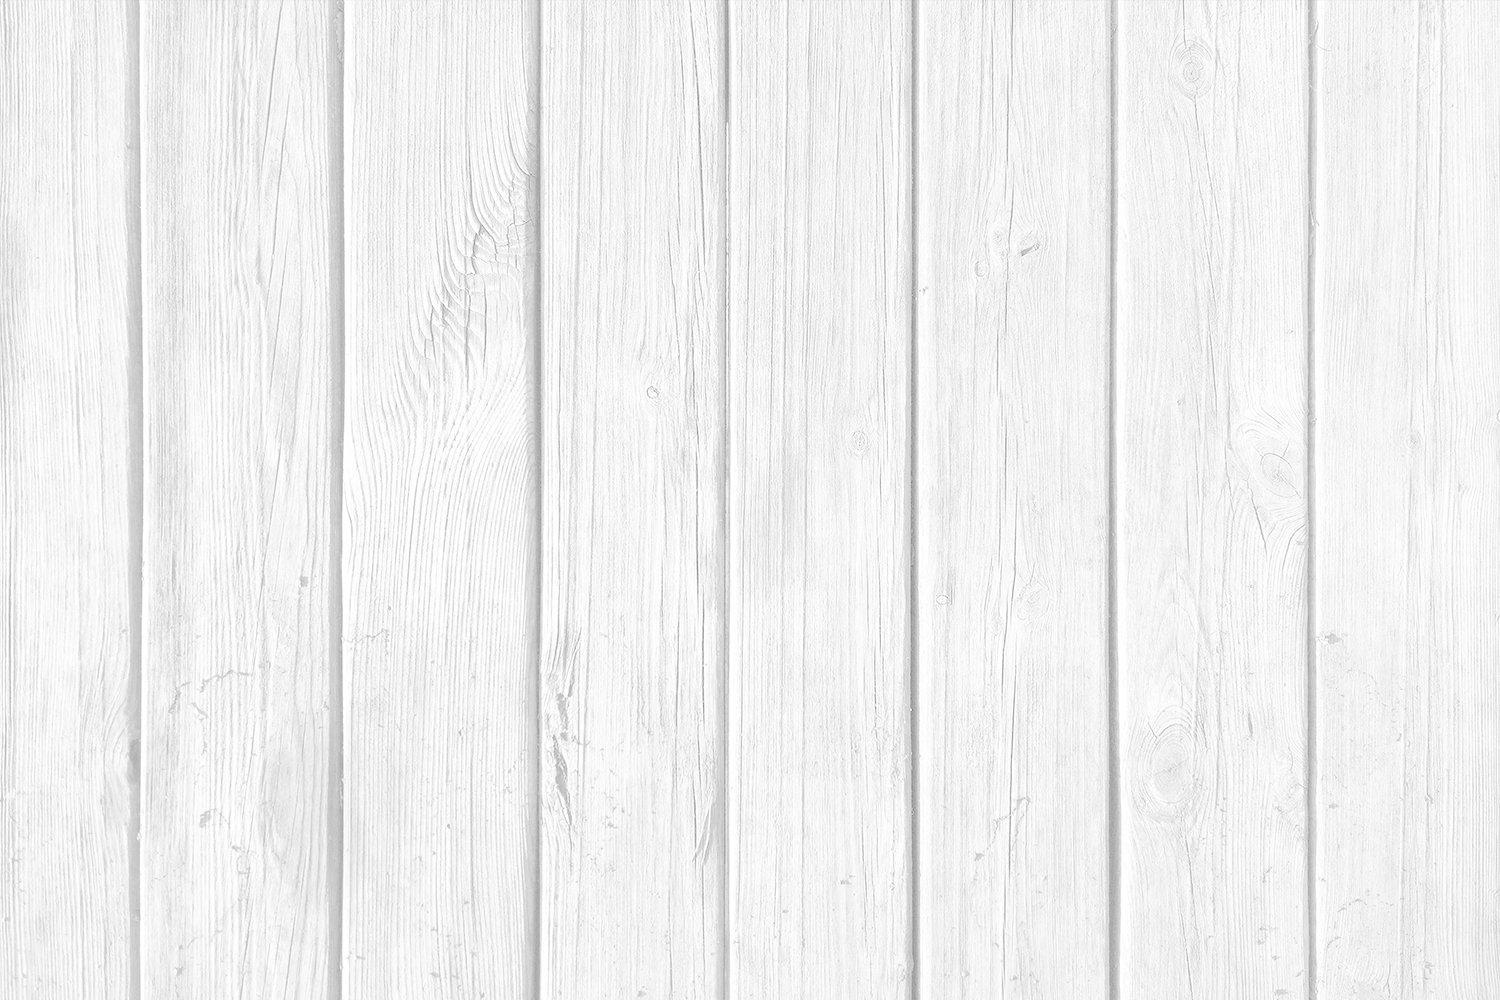 1500 x 1000 · jpeg - Whitewashed wood Background texture. white desk background (596532 ...